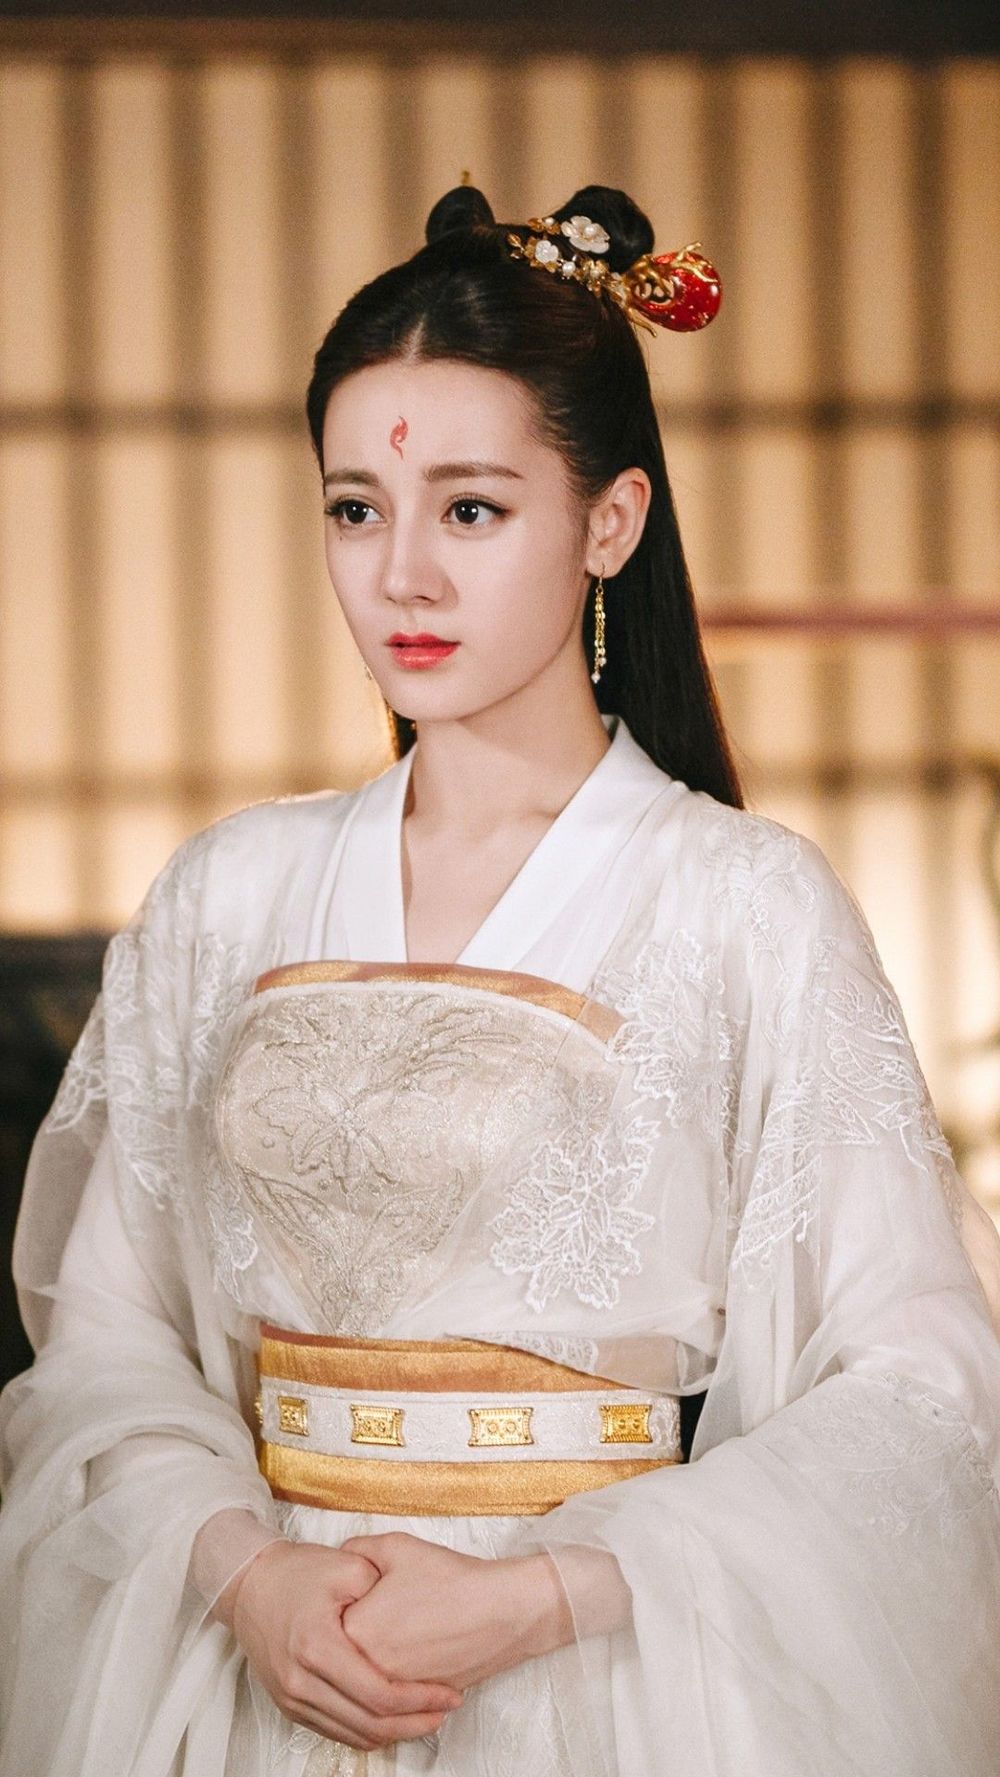  
Gương mặt lai Tây của Địch Lệ Nhiệt Ba khiến Cnet la ó mỗi khi cô đảm nhận vai diễn cổ trang. (Ảnh: Weibo).